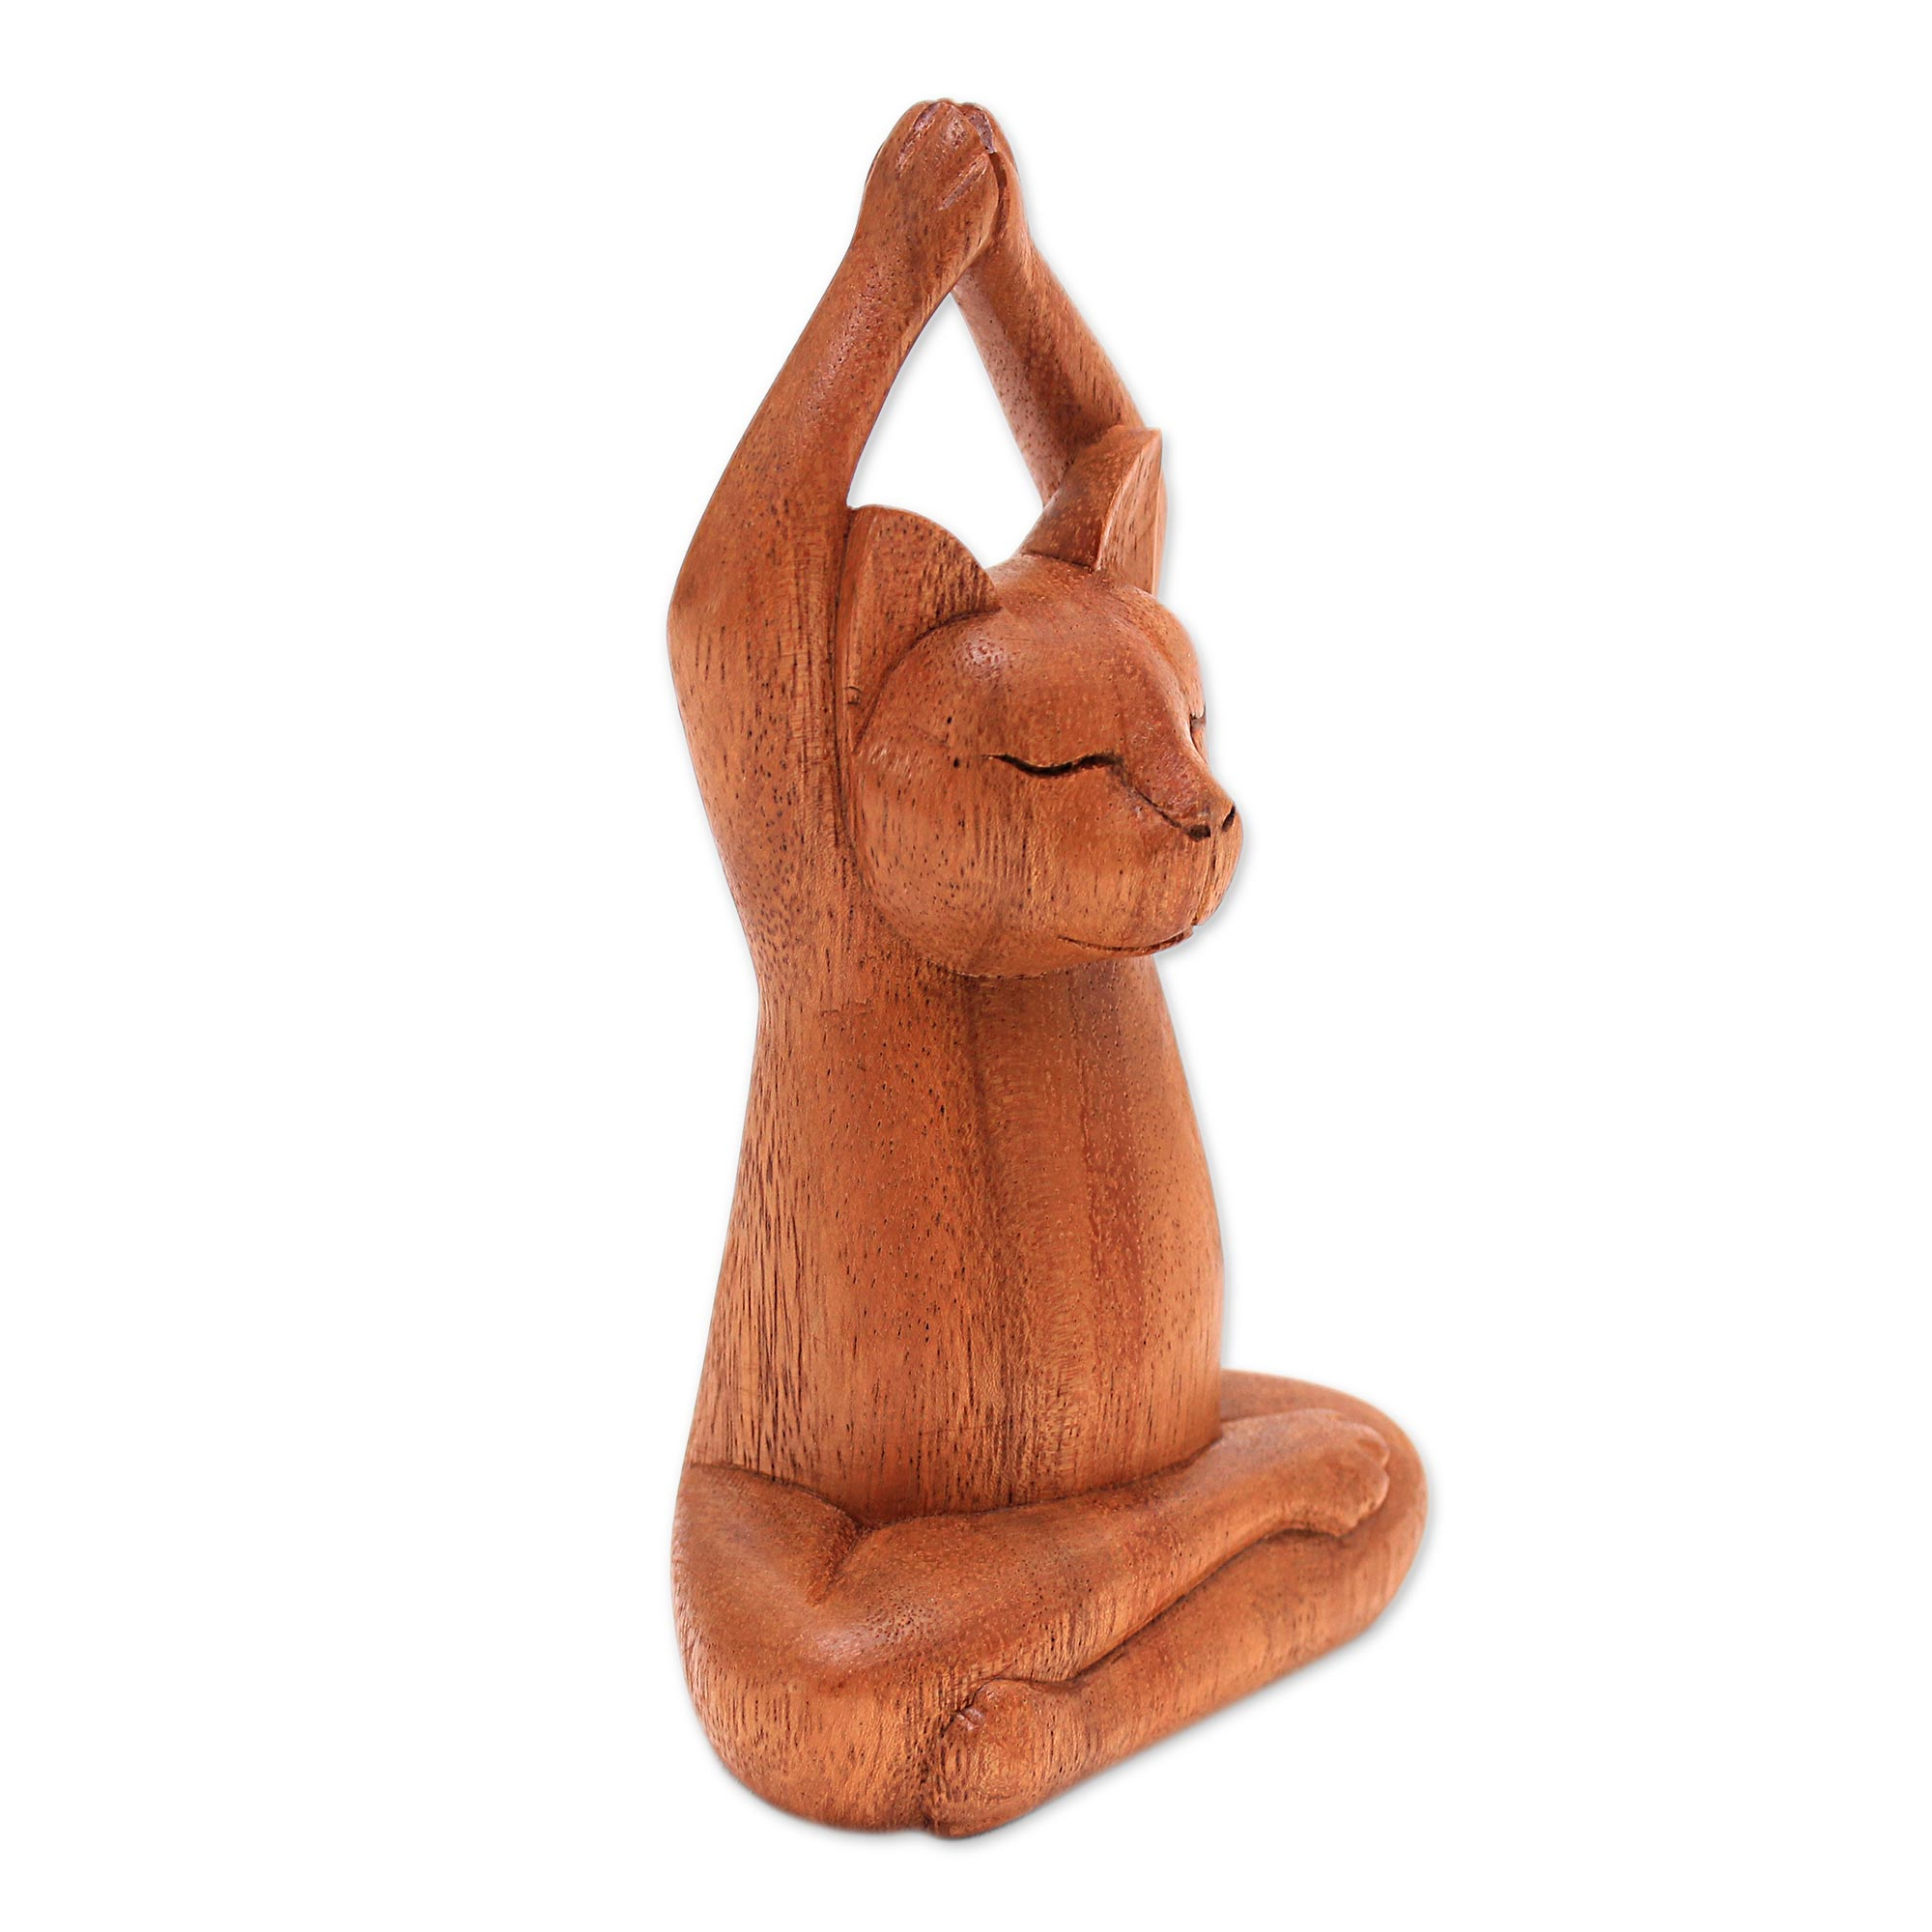 UNICEF Market | Hand Carved Wooden Feline Figure - Strike a Pose